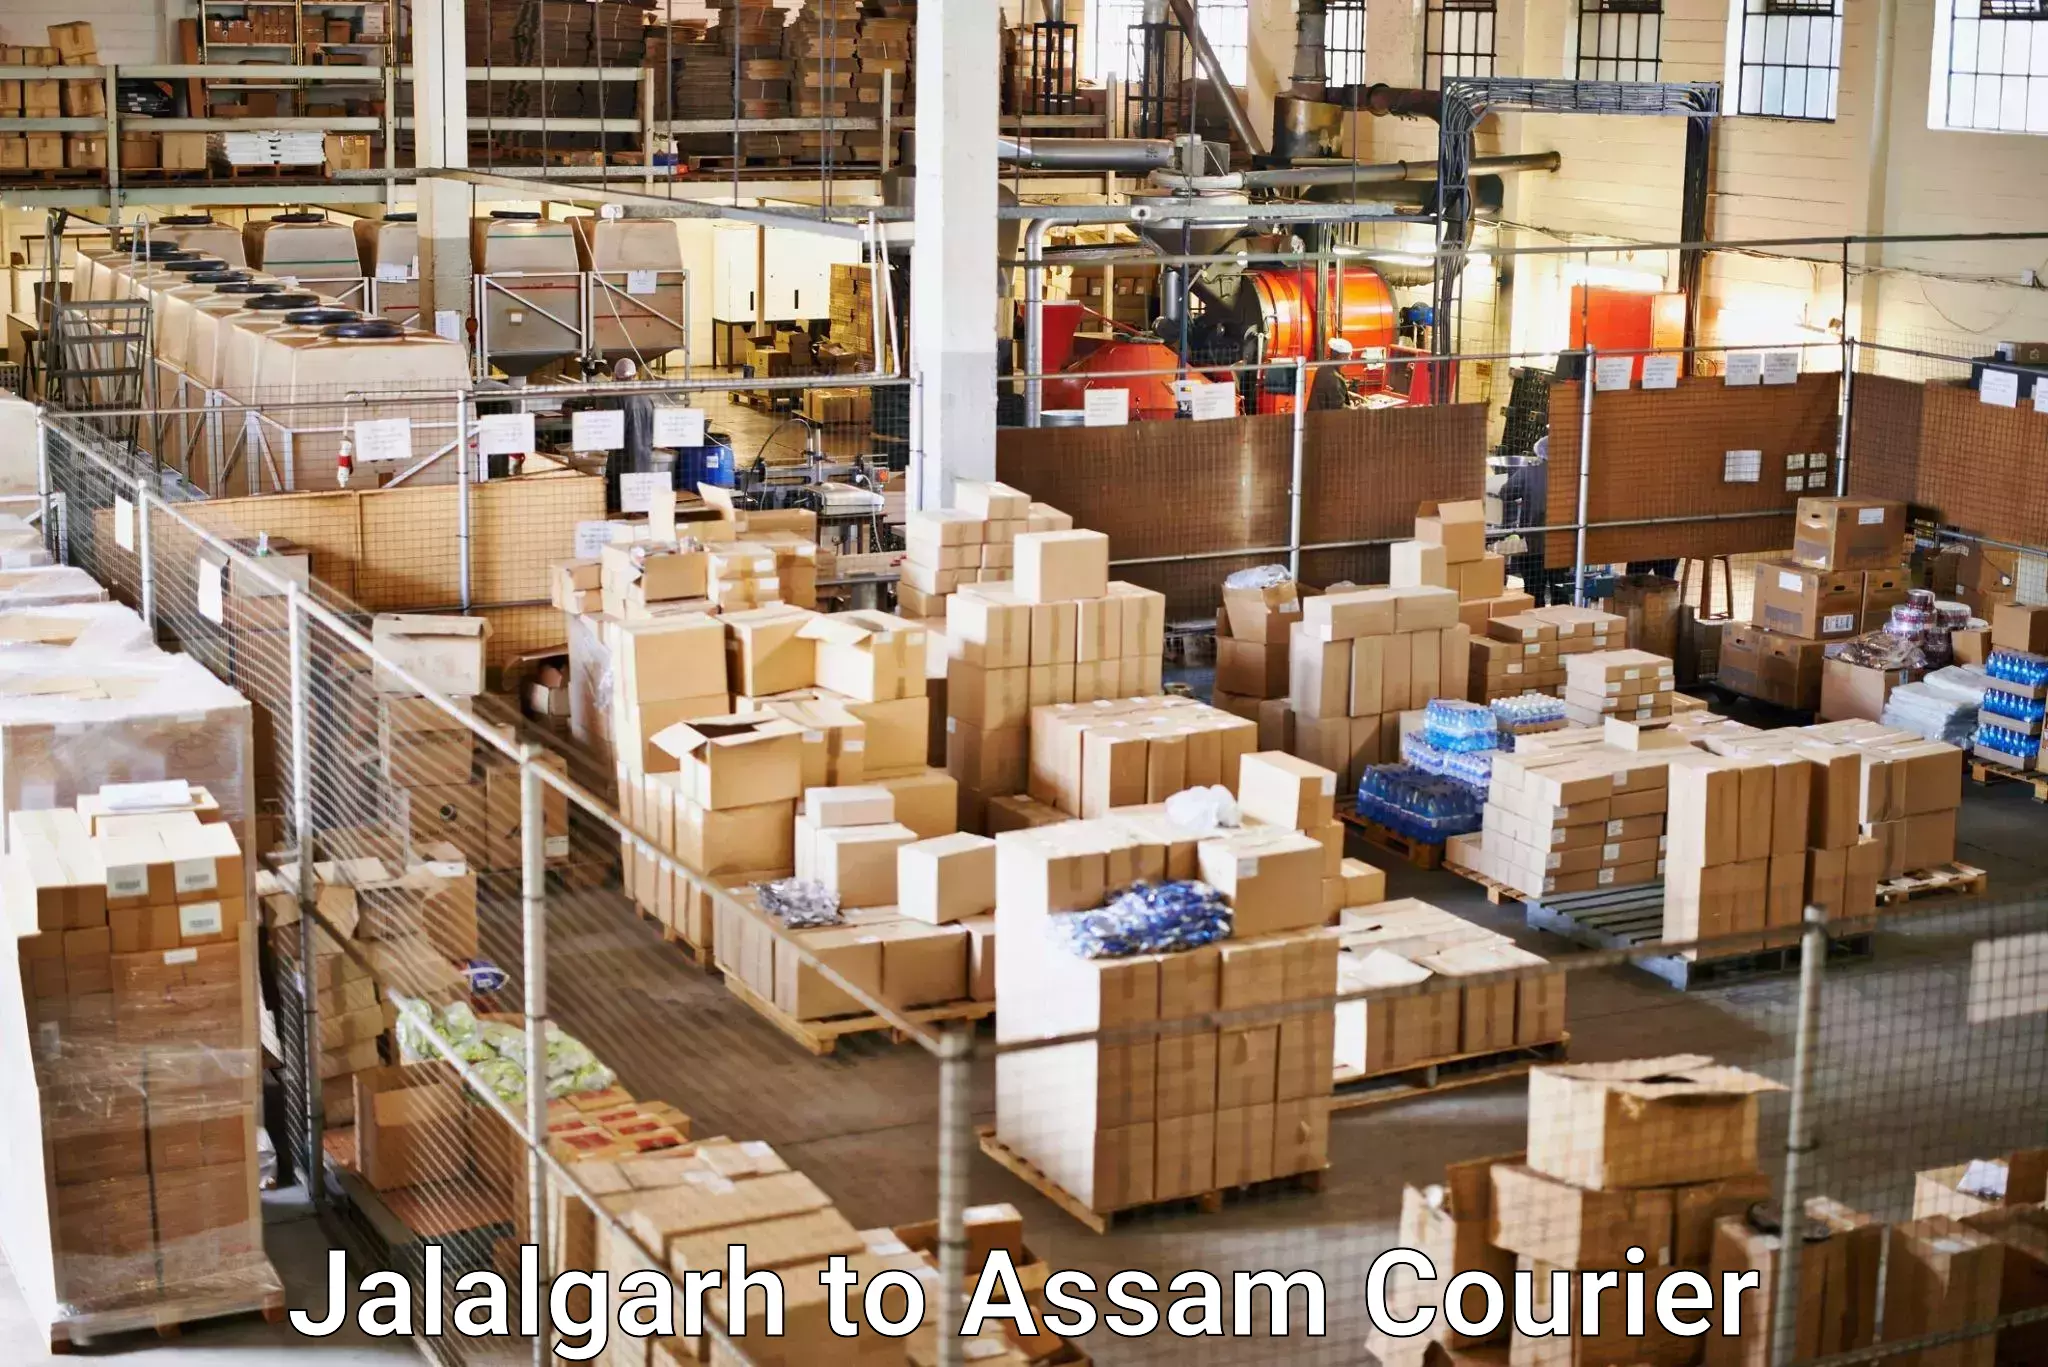 Fast shipping solutions in Jalalgarh to Badarpur Karimganj